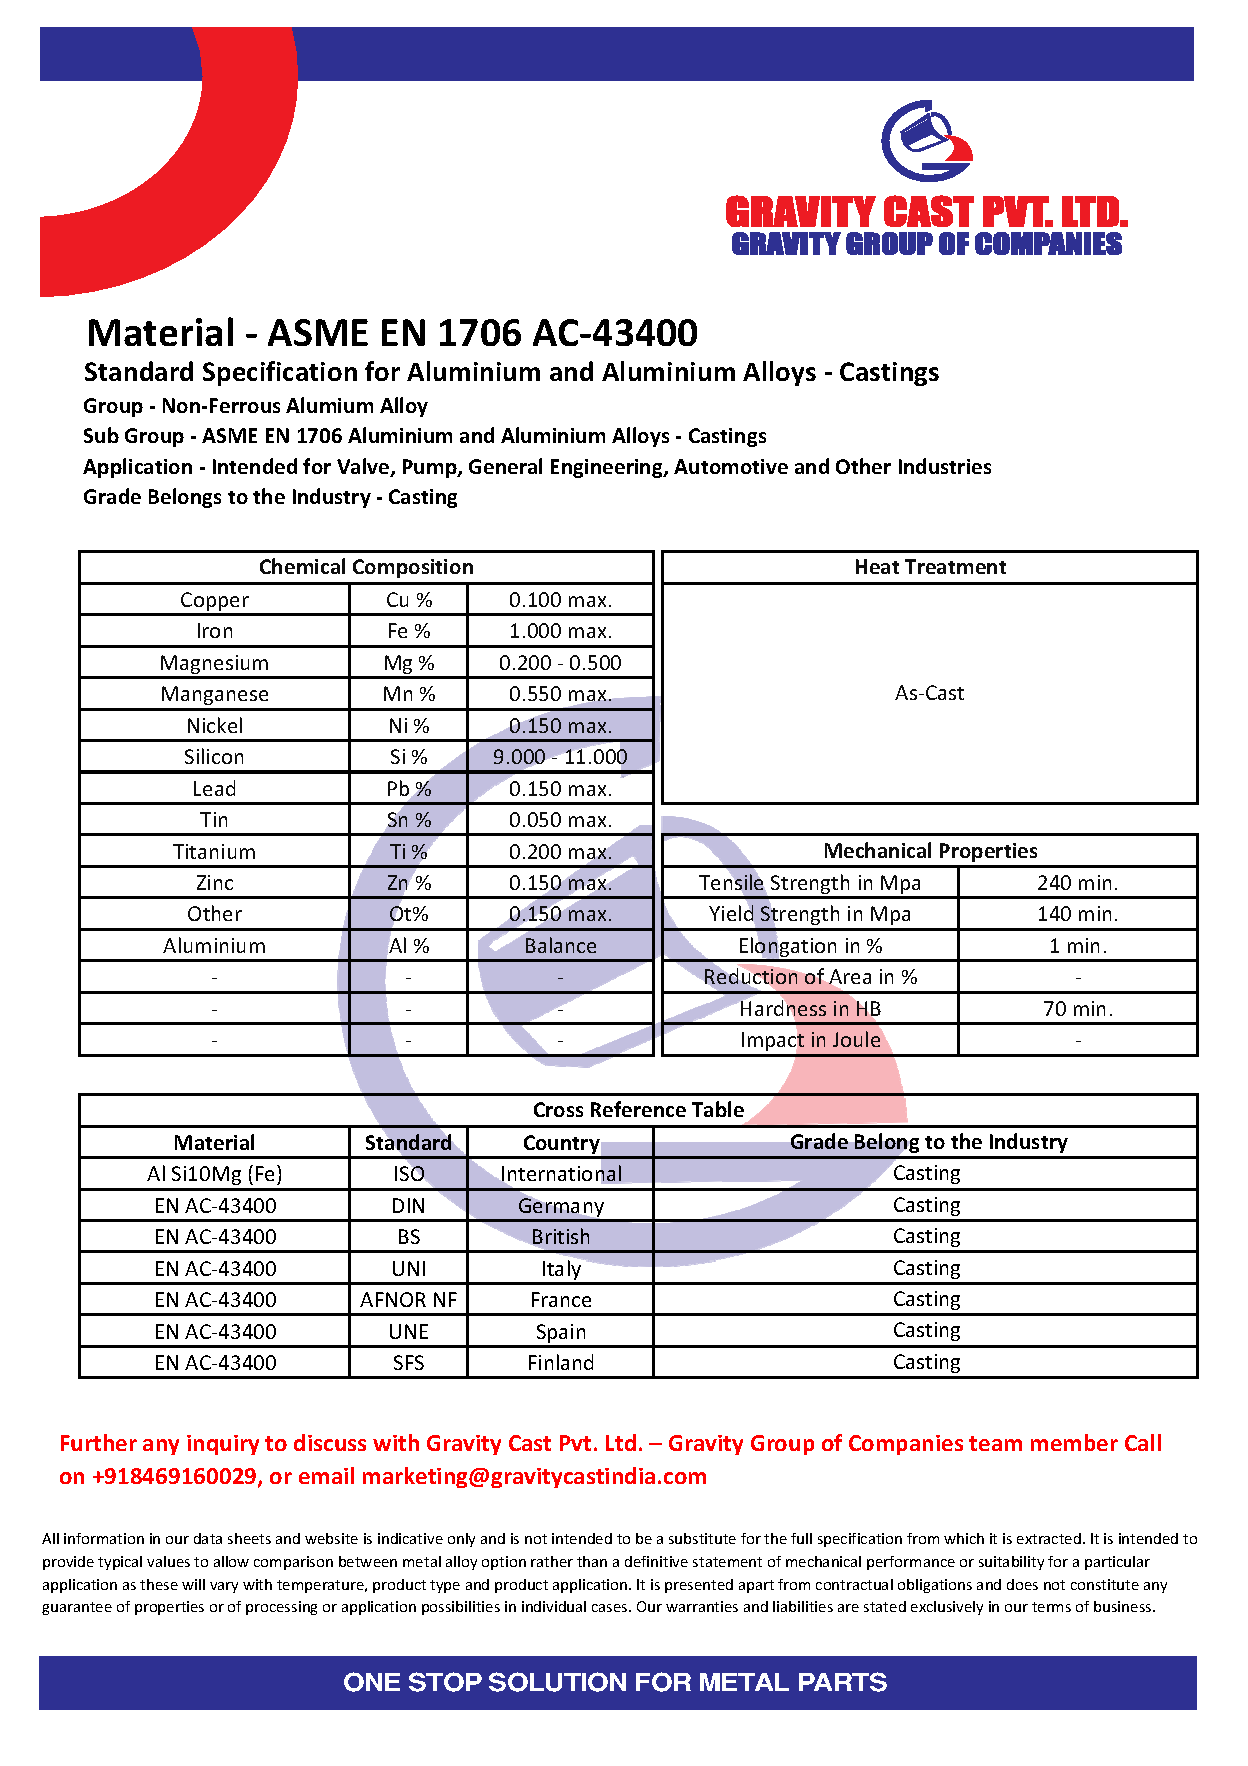 ASME EN 1706 AC-43400.pdf